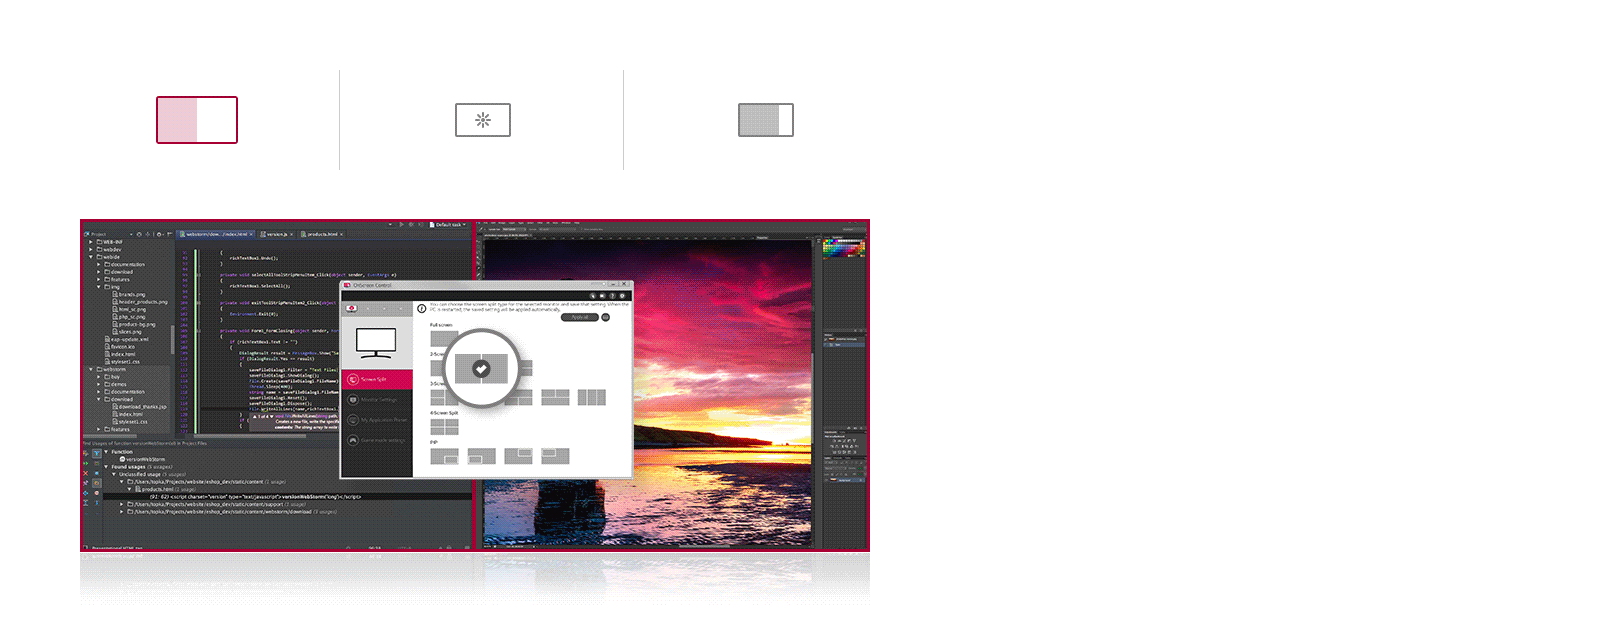 Možete da prilagodite radni prostor deljenjem ekrana ili podešavanjem osnovnih opcija monitora uz samo nekoliko klikova miša.